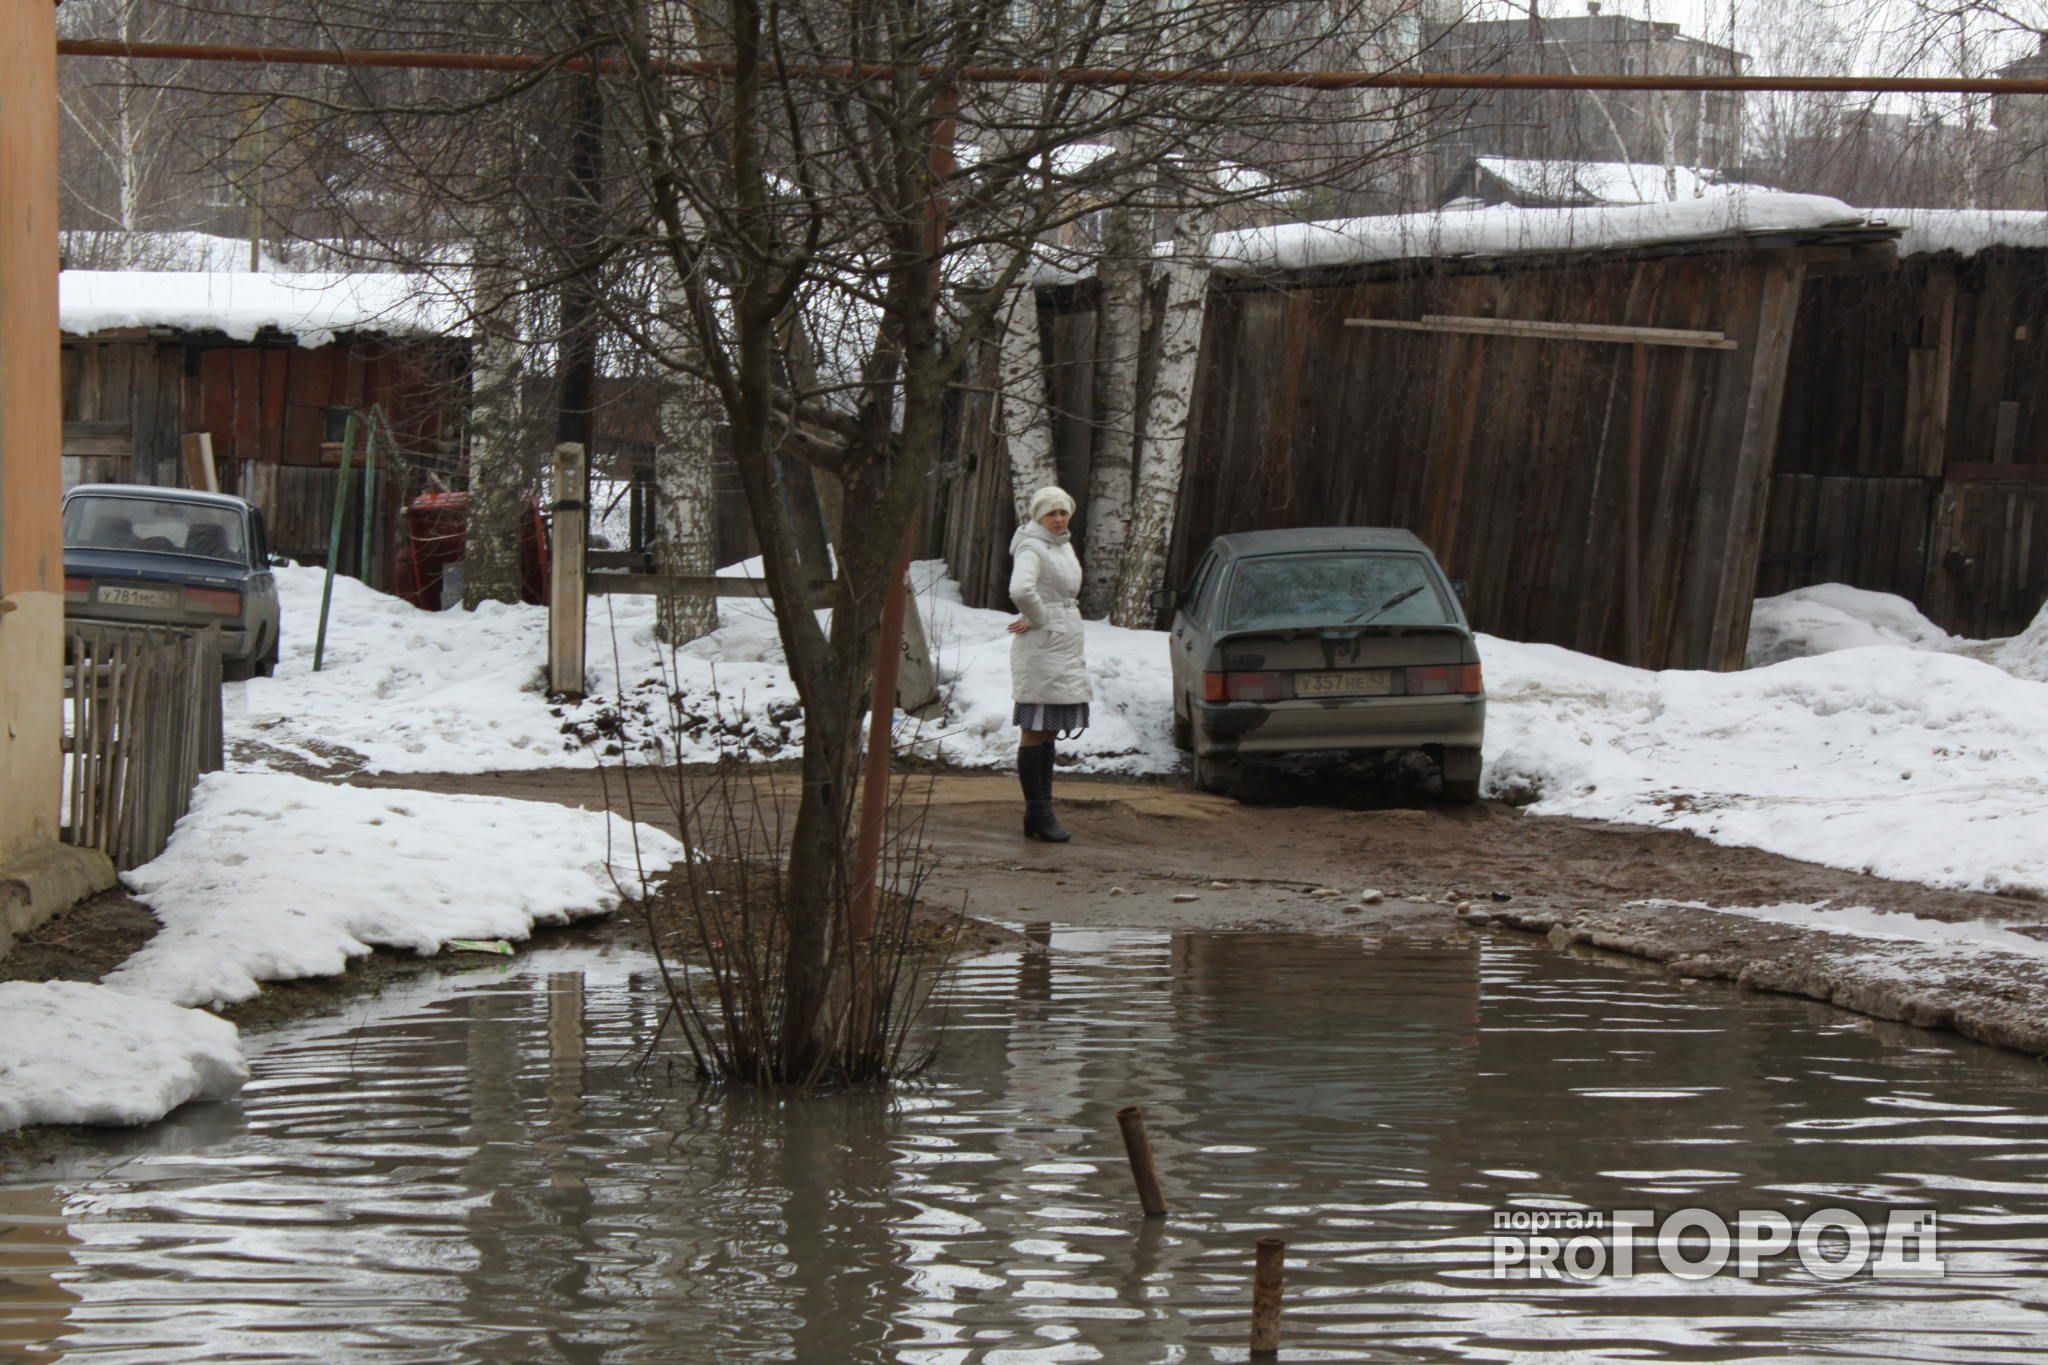 Участки автодорог затопило в Уренском и Навашинском районах